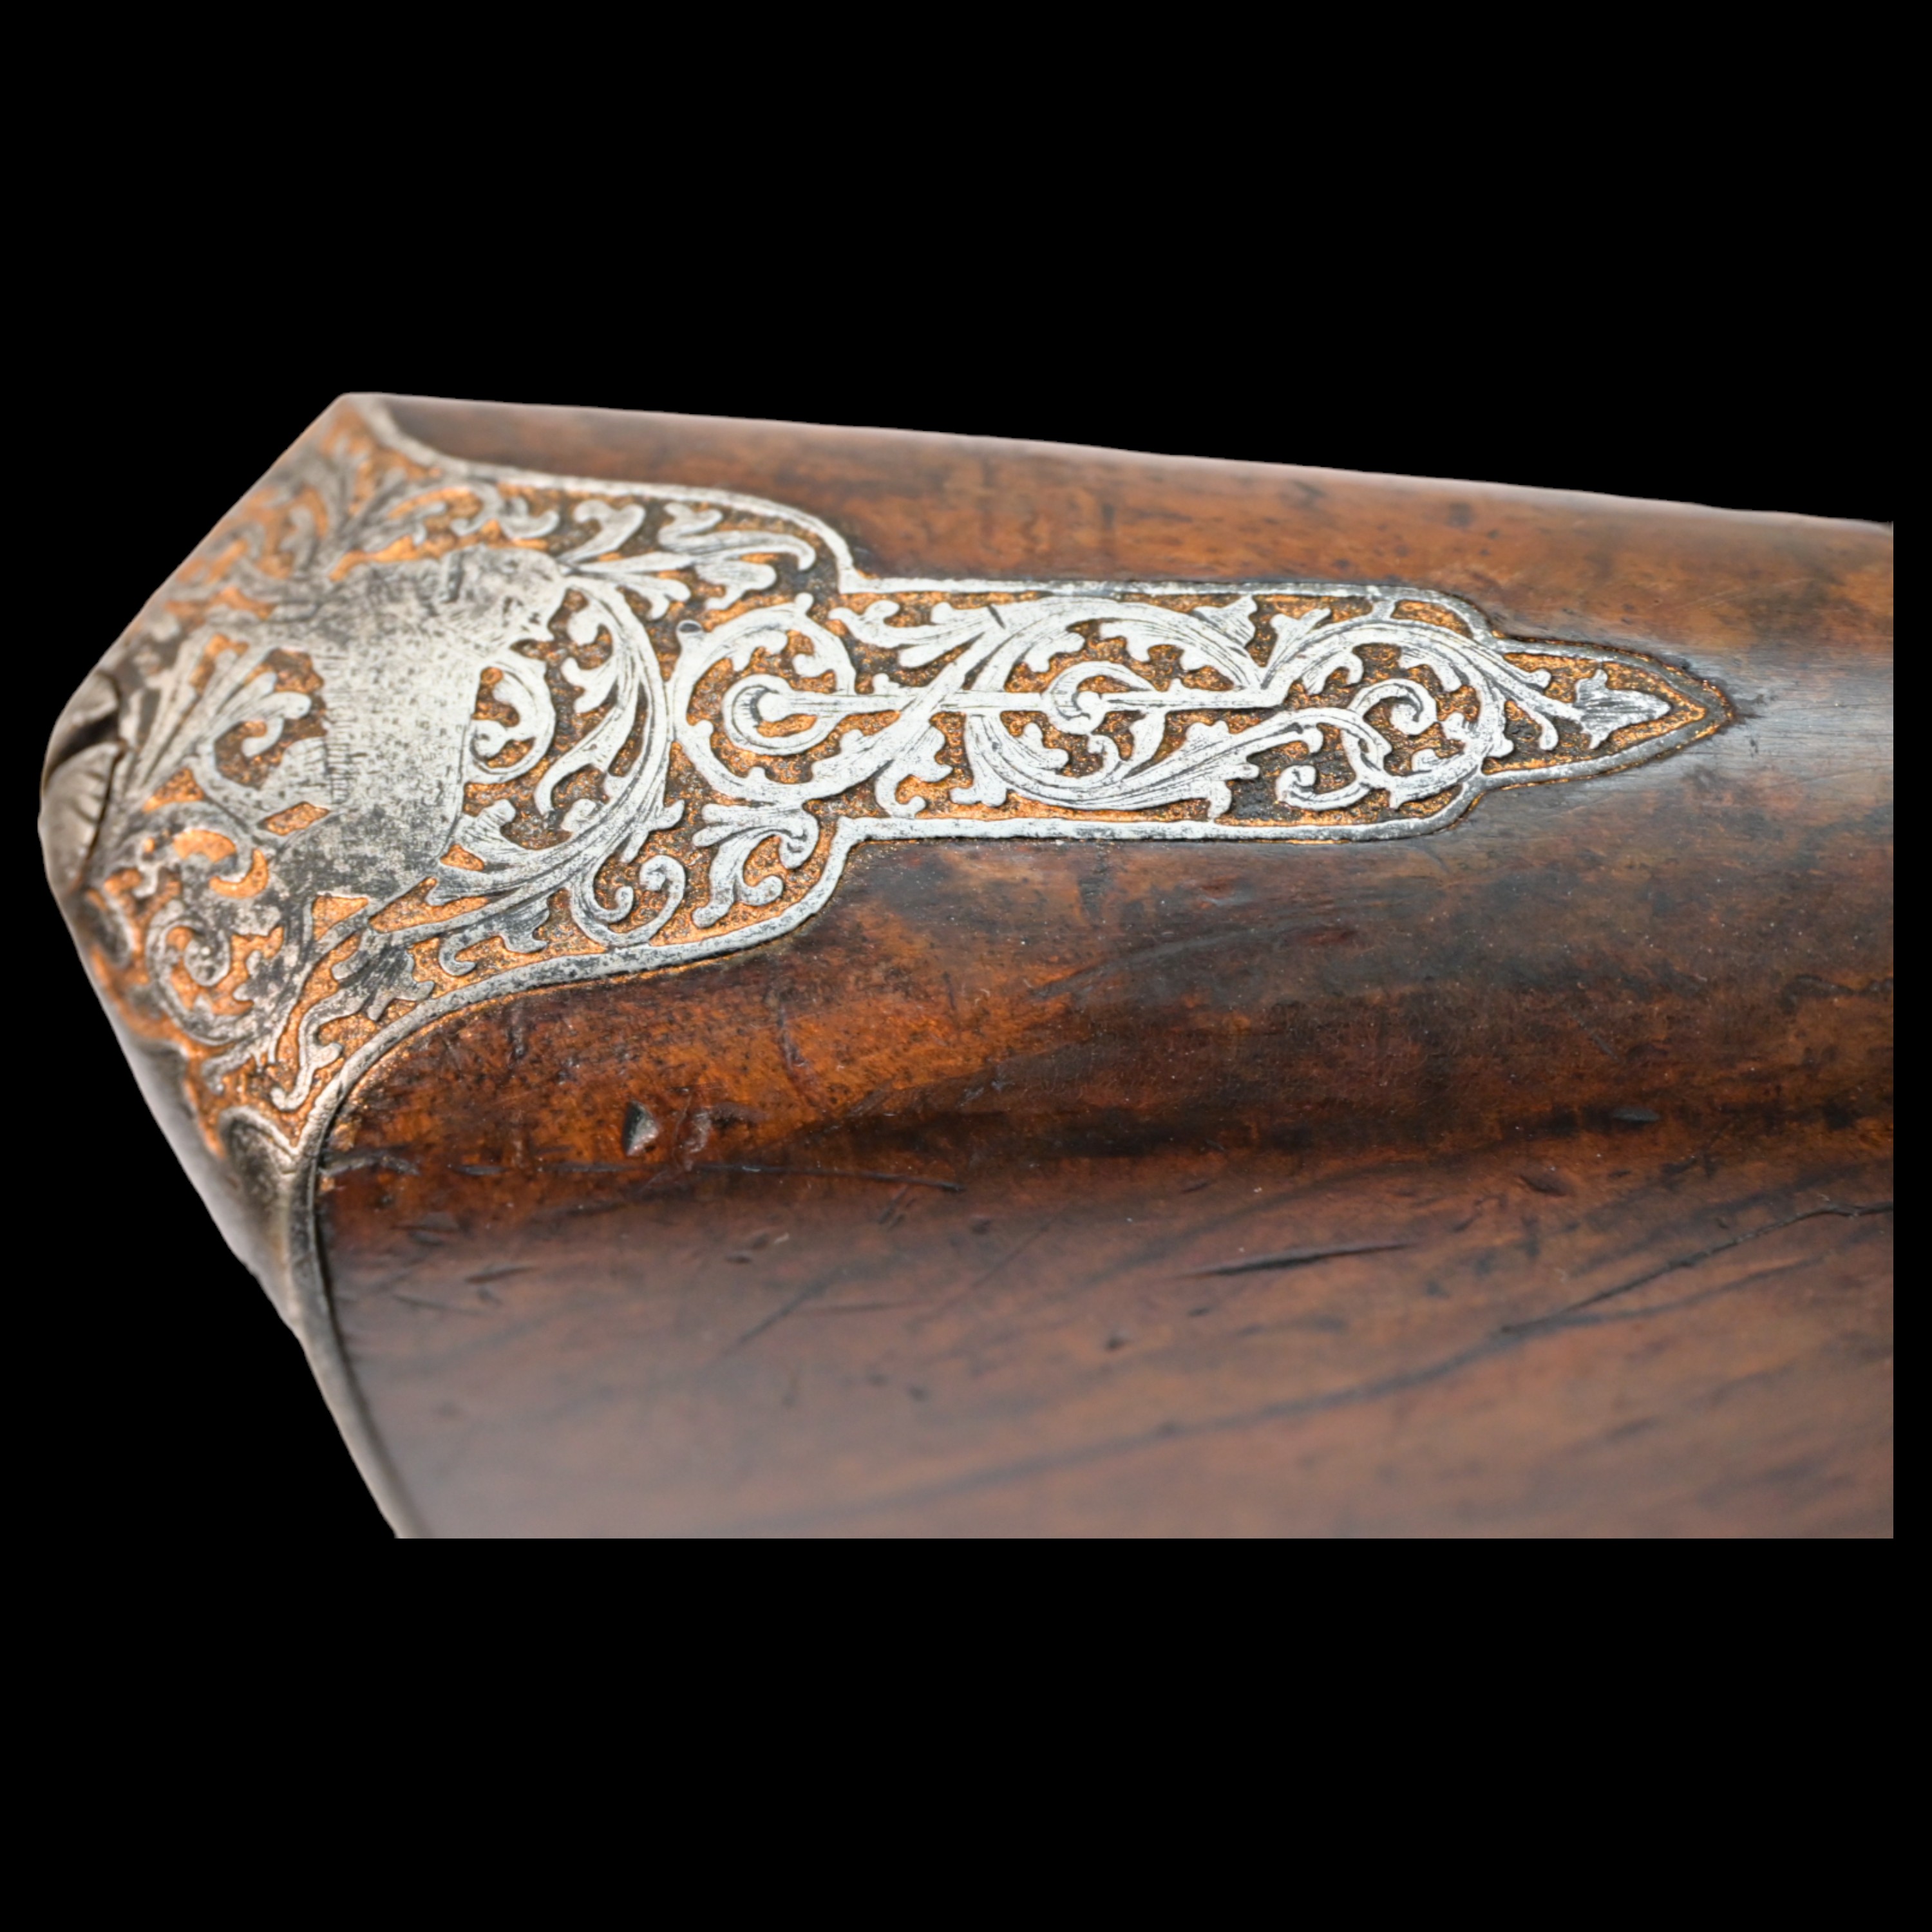 Rare Double-barrel percussion shotgun, Eusebio Zuloaga, royal gunsmith, Spain, mid-19th century. - Image 21 of 26